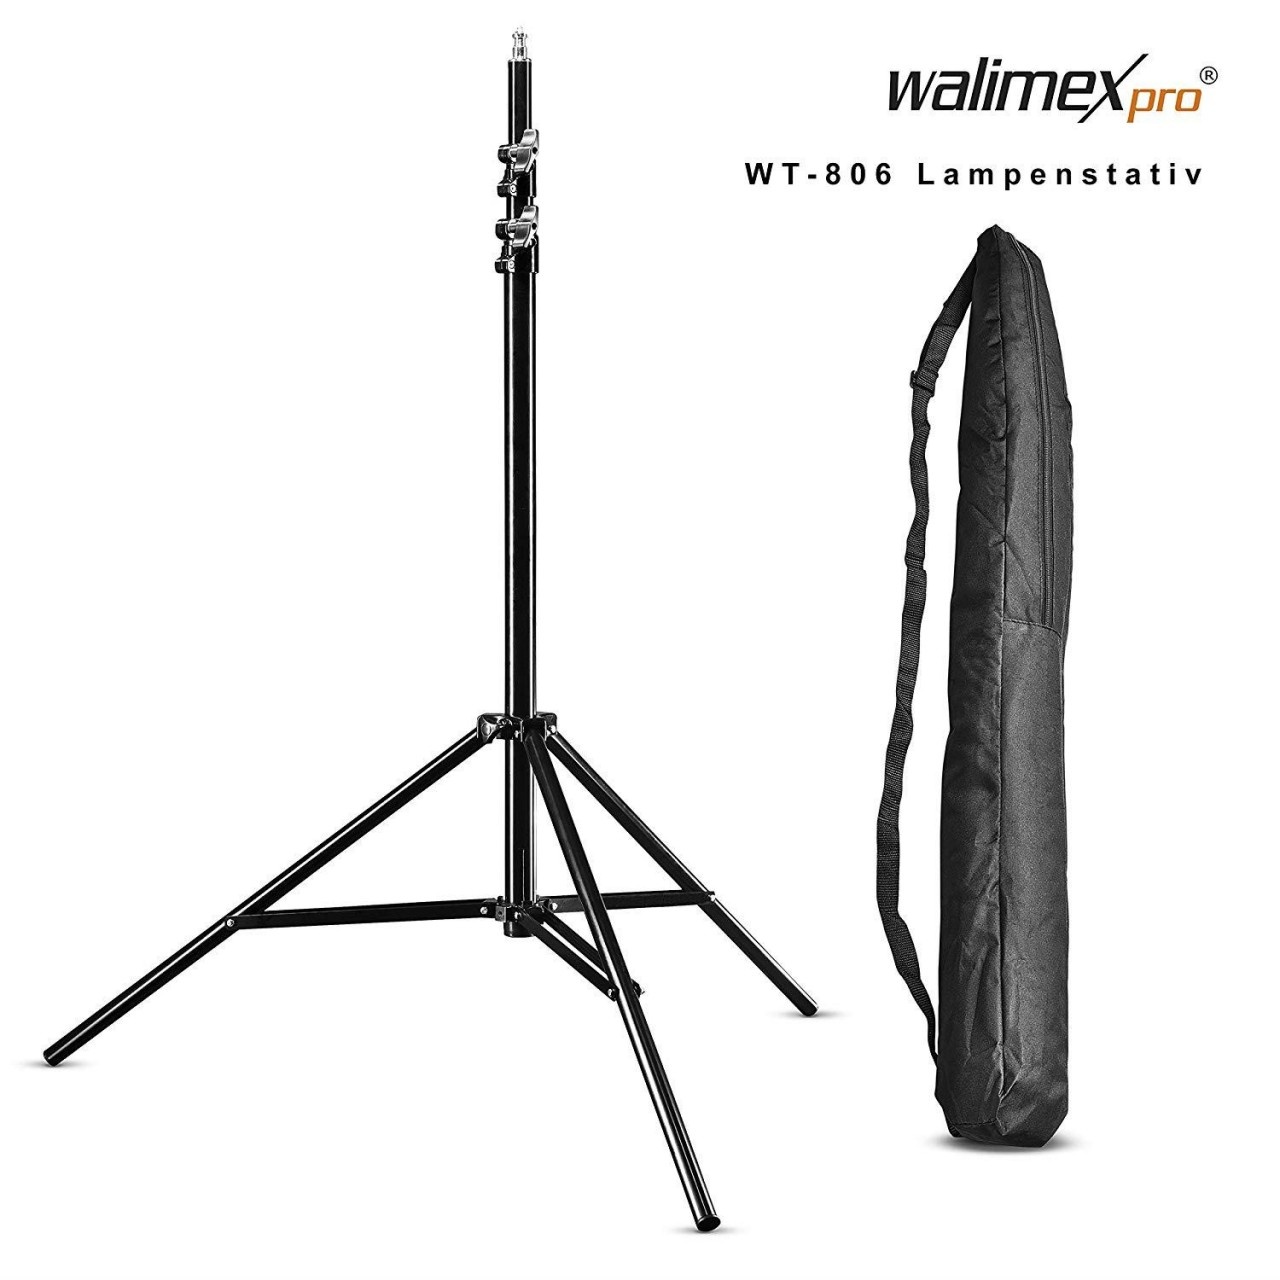 walimex pro WT-806 Lampenstativ maximale Höhe 256cm mit Federdämpfung und Transporttasche